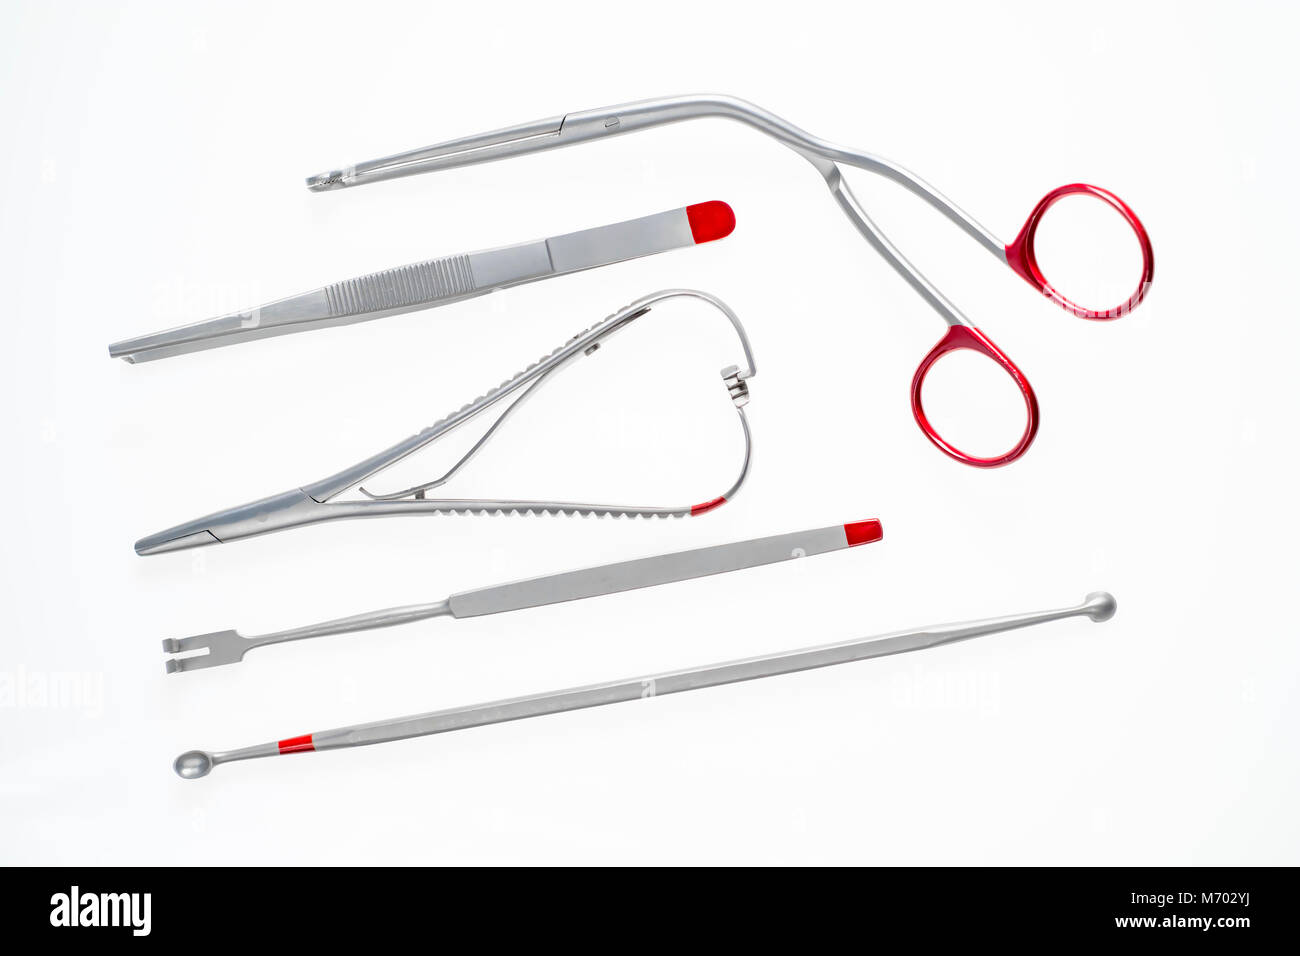 Diversos instrumentos médicos y quirúrgicos aislados en blanco Foto de stock